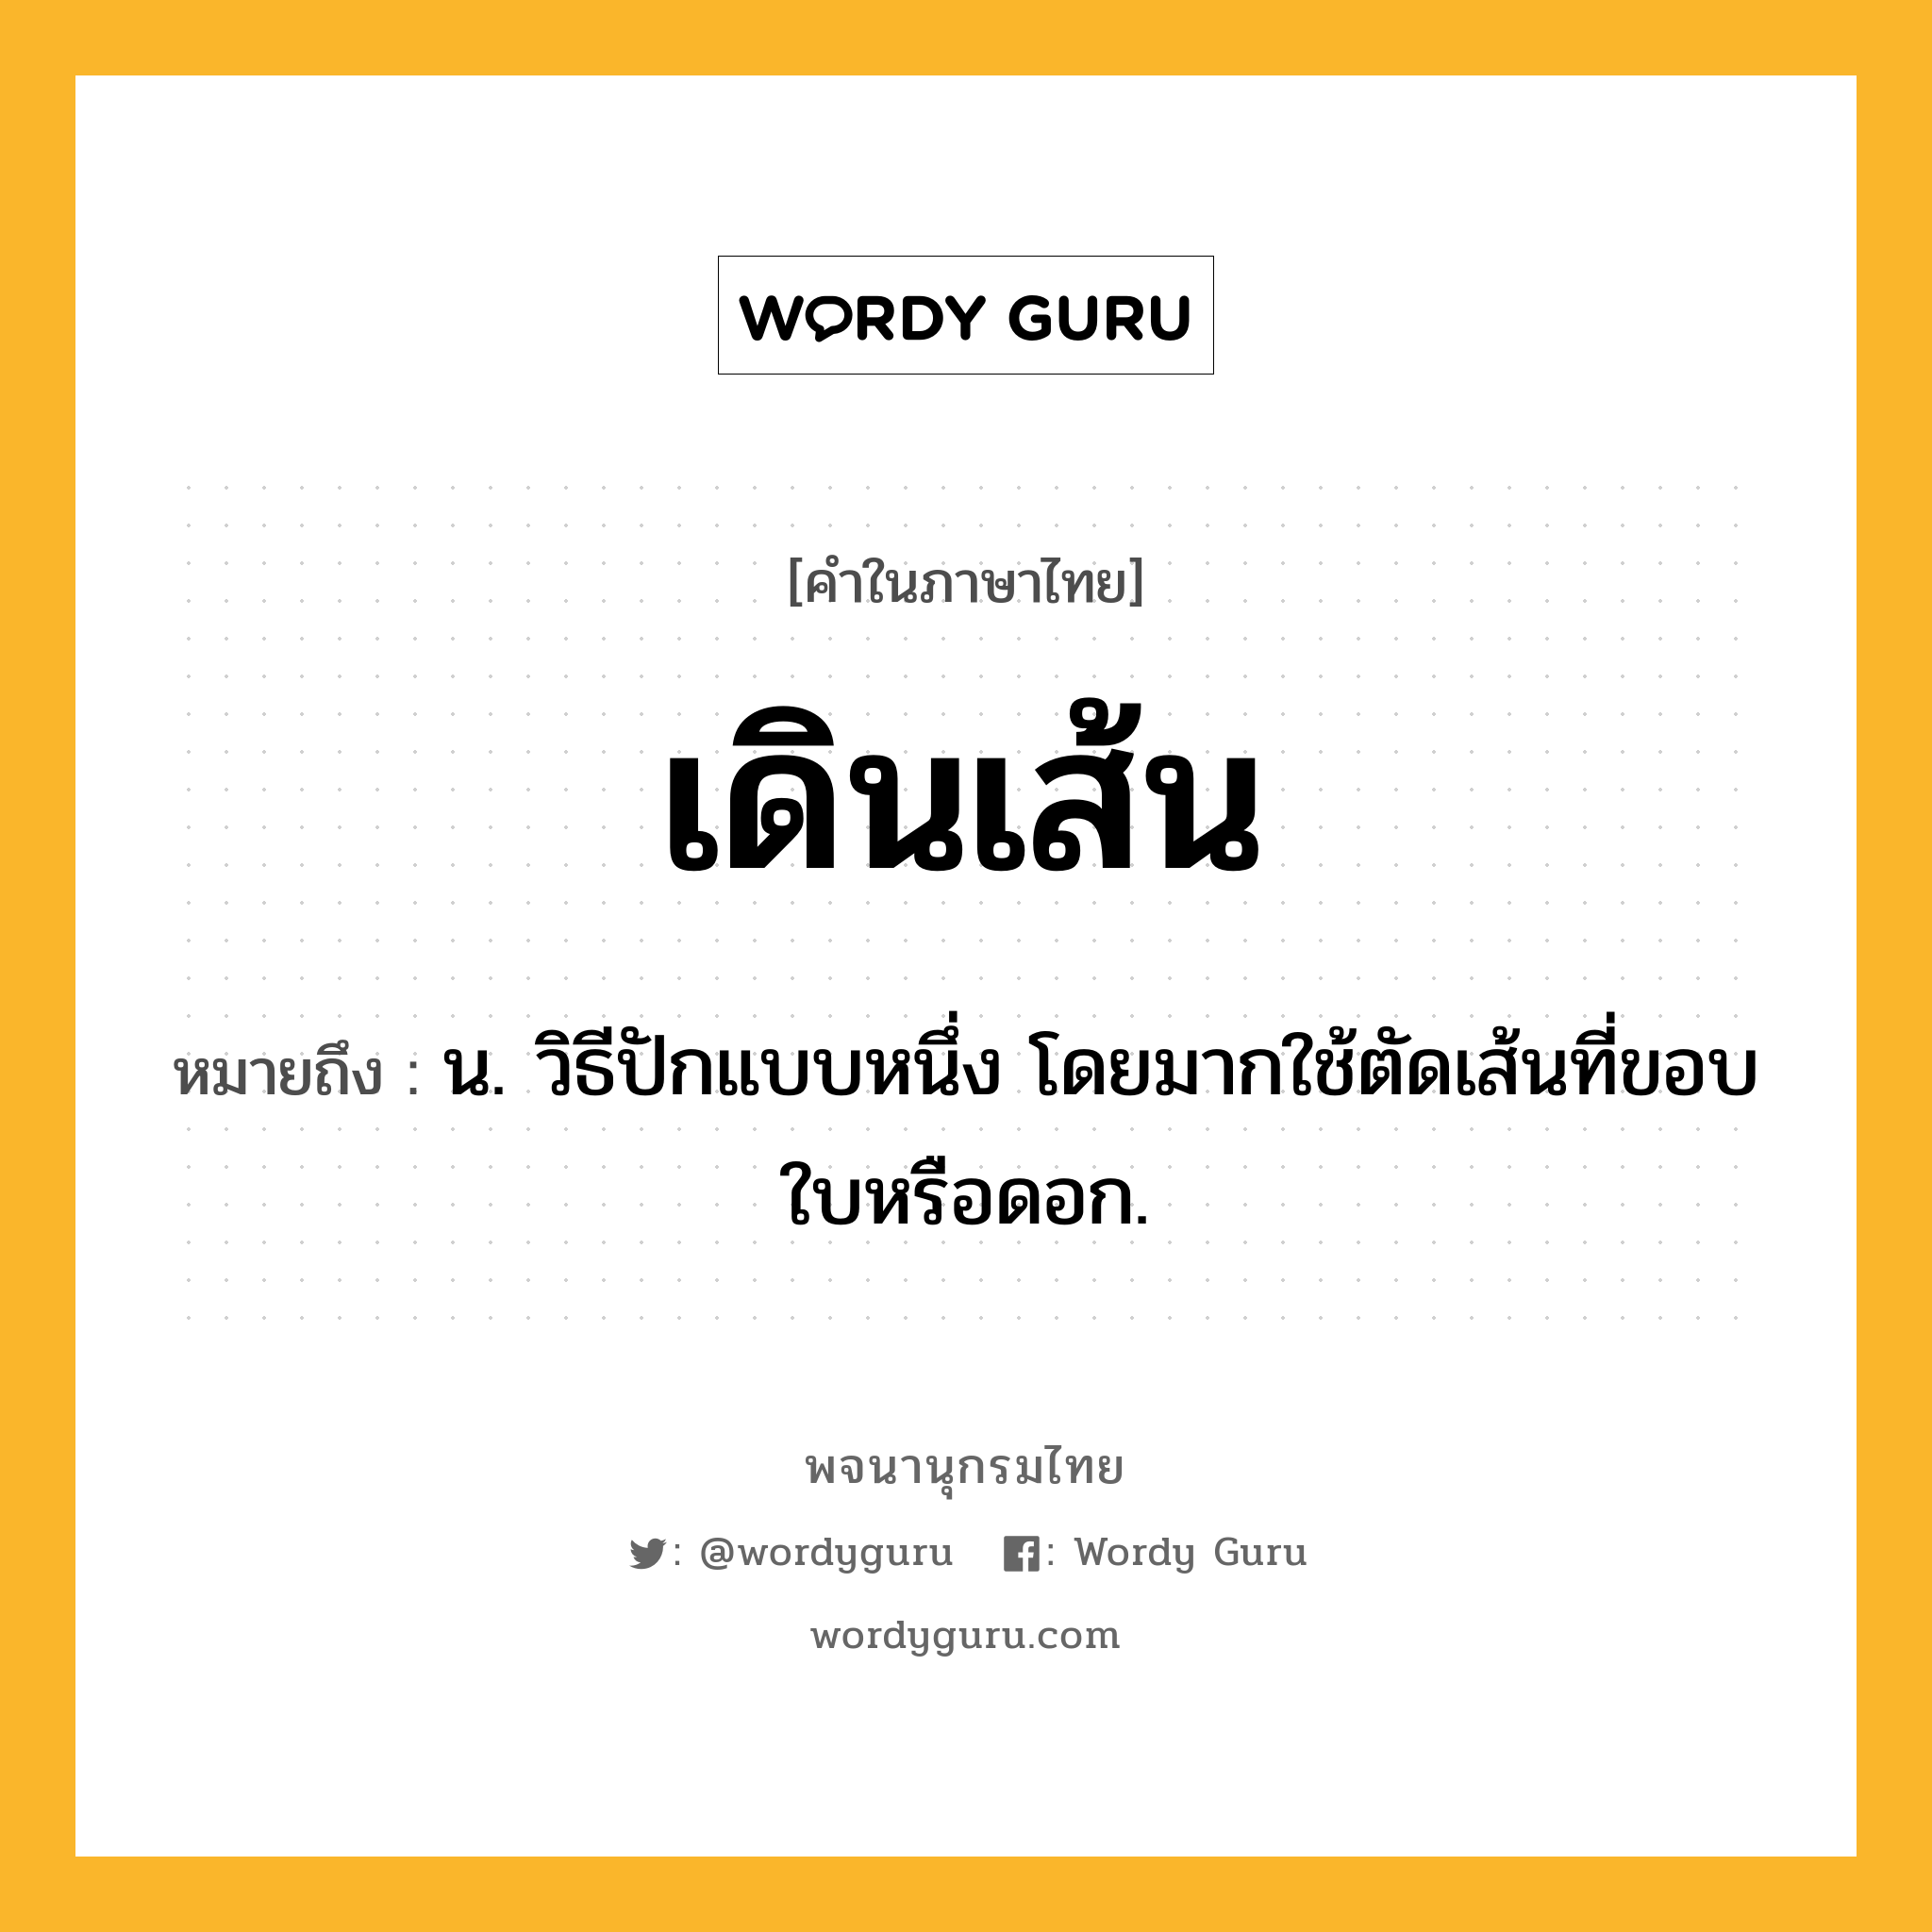 เดินเส้น ความหมาย หมายถึงอะไร?, คำในภาษาไทย เดินเส้น หมายถึง น. วิธีปักแบบหนึ่ง โดยมากใช้ตัดเส้นที่ขอบใบหรือดอก.